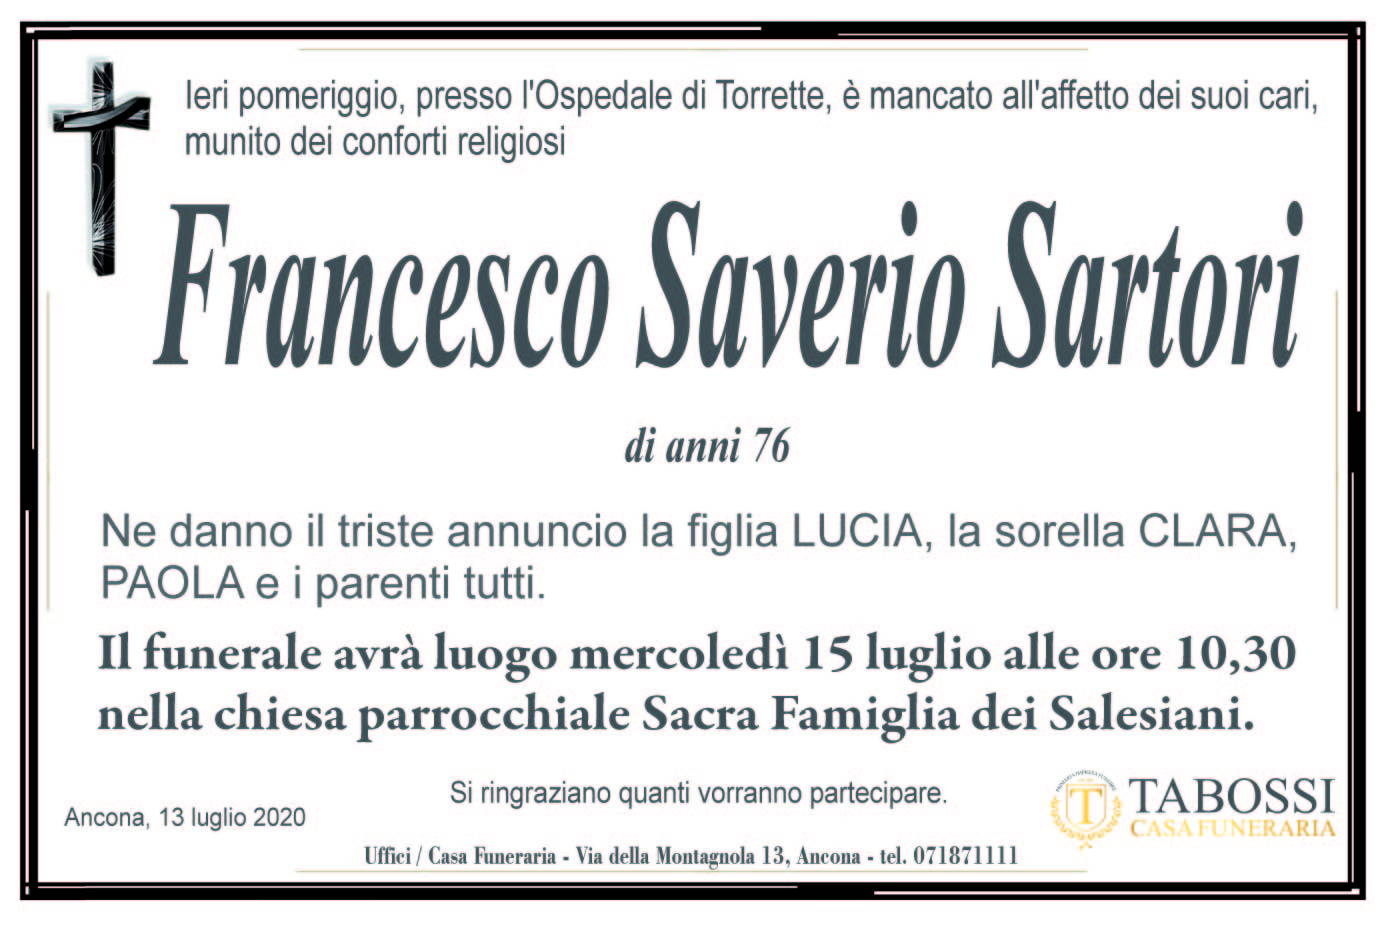 Francesco Saverio Sartori